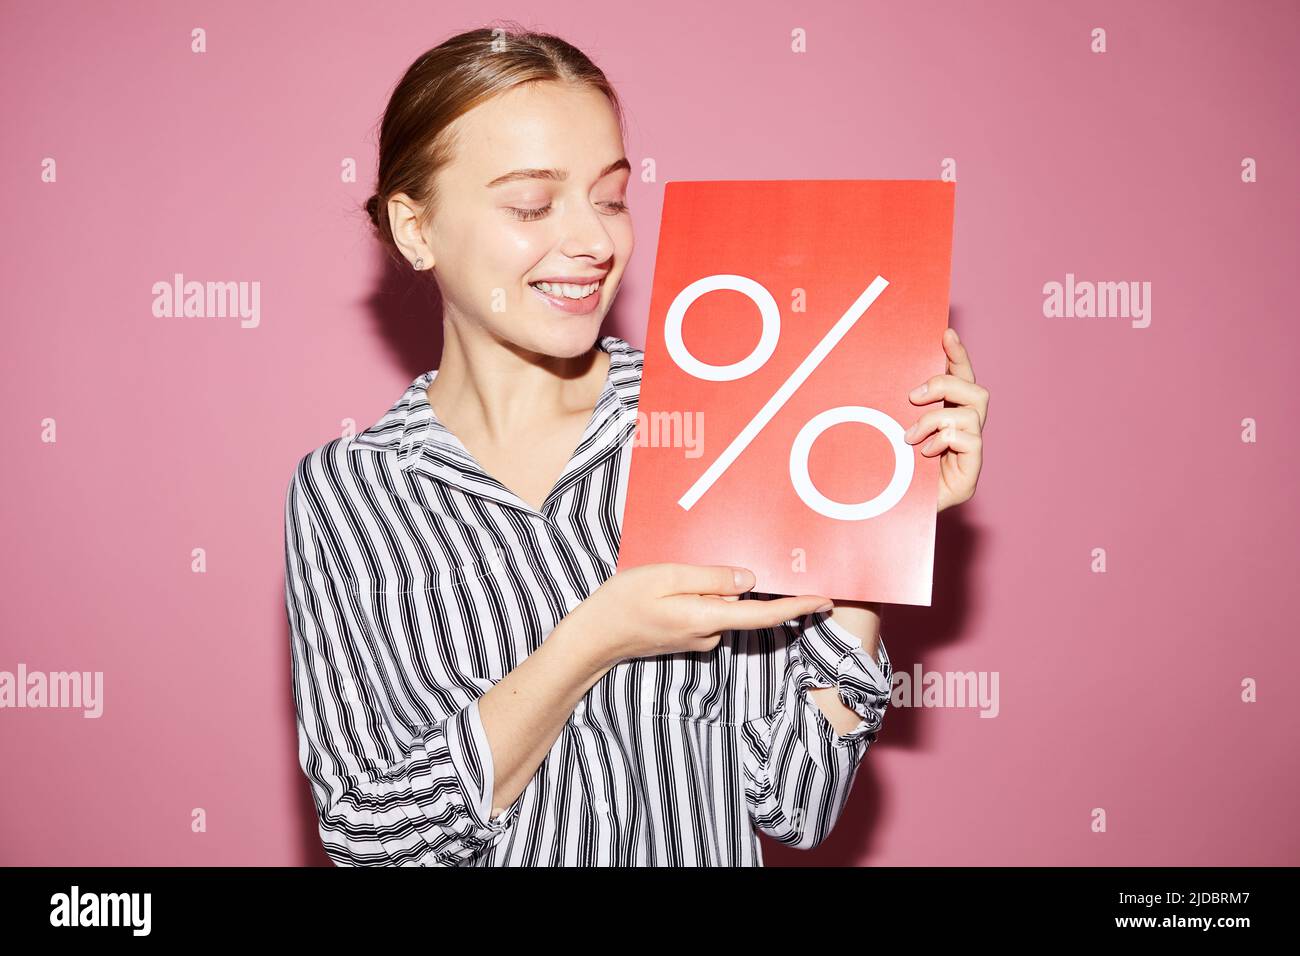 Un'attraente e positiva donna di vendita che tiene un banner percentuale mentre condivide le informazioni sull'offerta speciale in negozio Foto Stock